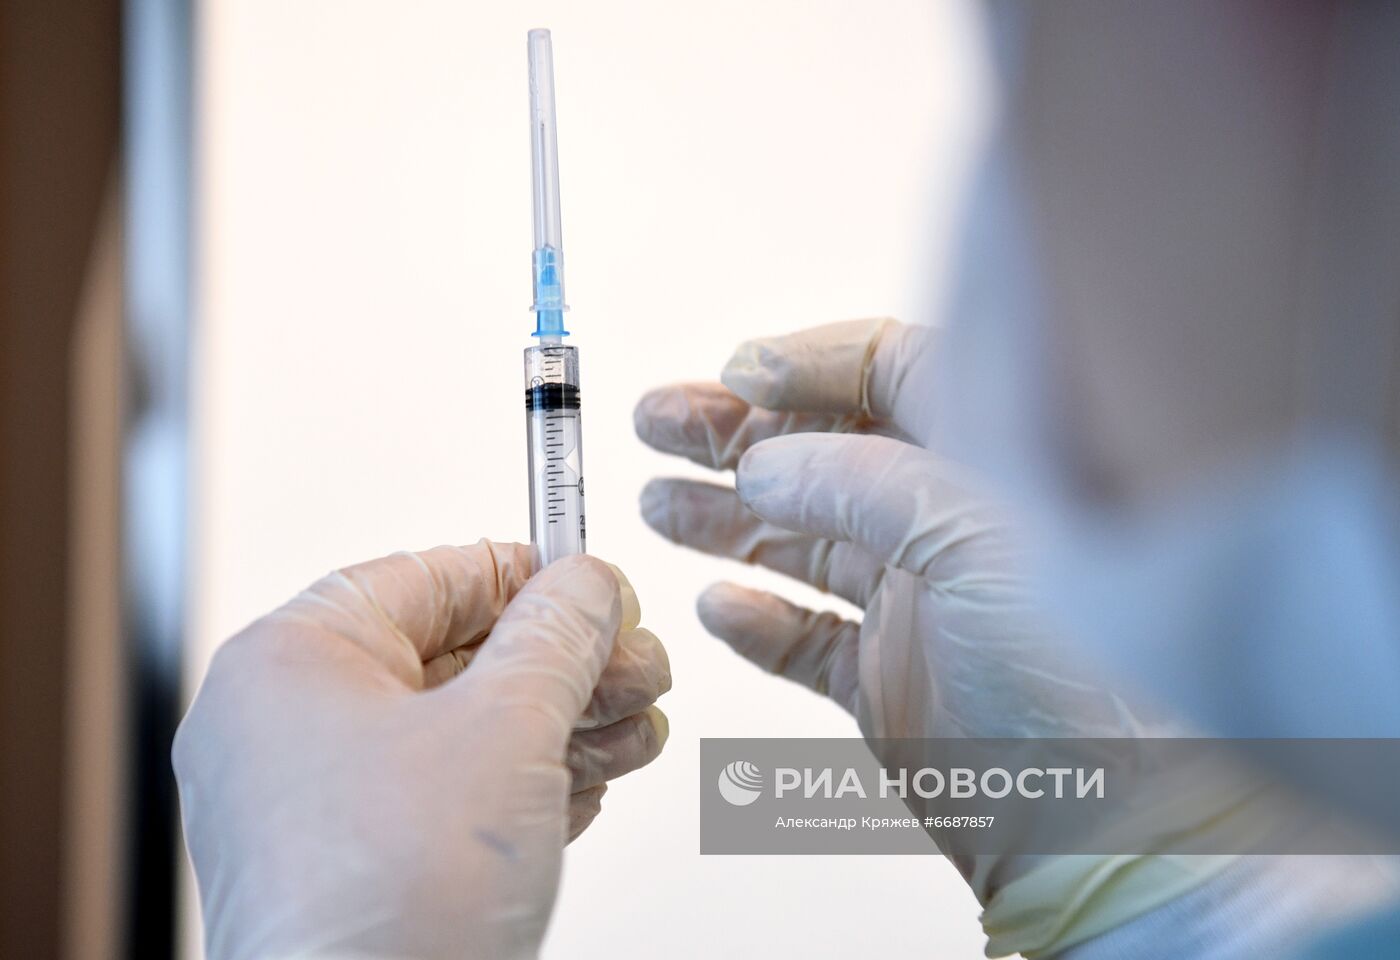 Выездная вакцинация сотрудников отеля "River Park" в Новосибирске